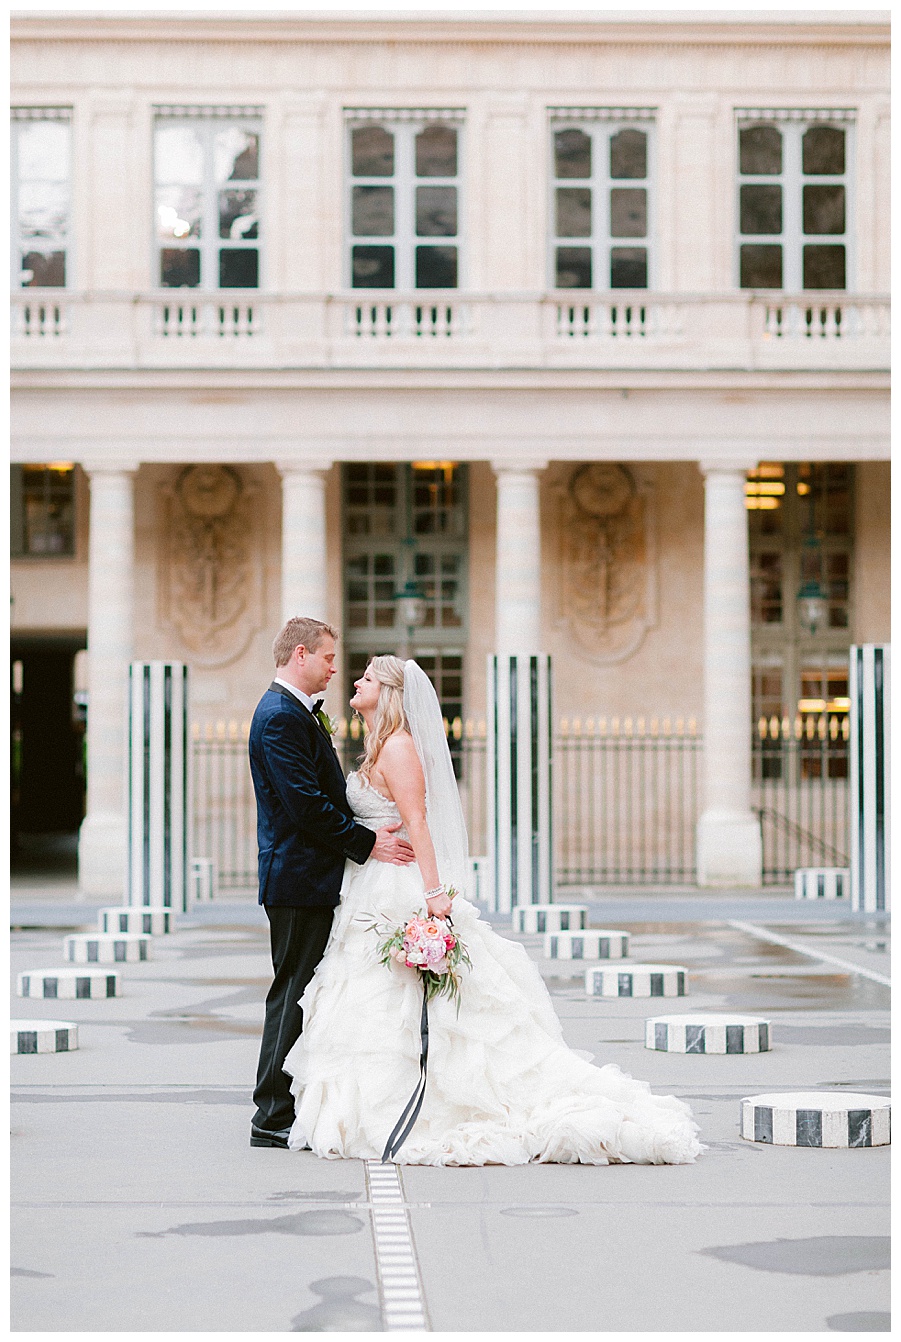 paris elopement planner, wedding officiant in paris, paris wedding in Palais Royale gardens, Paris wedding planner located in Paris